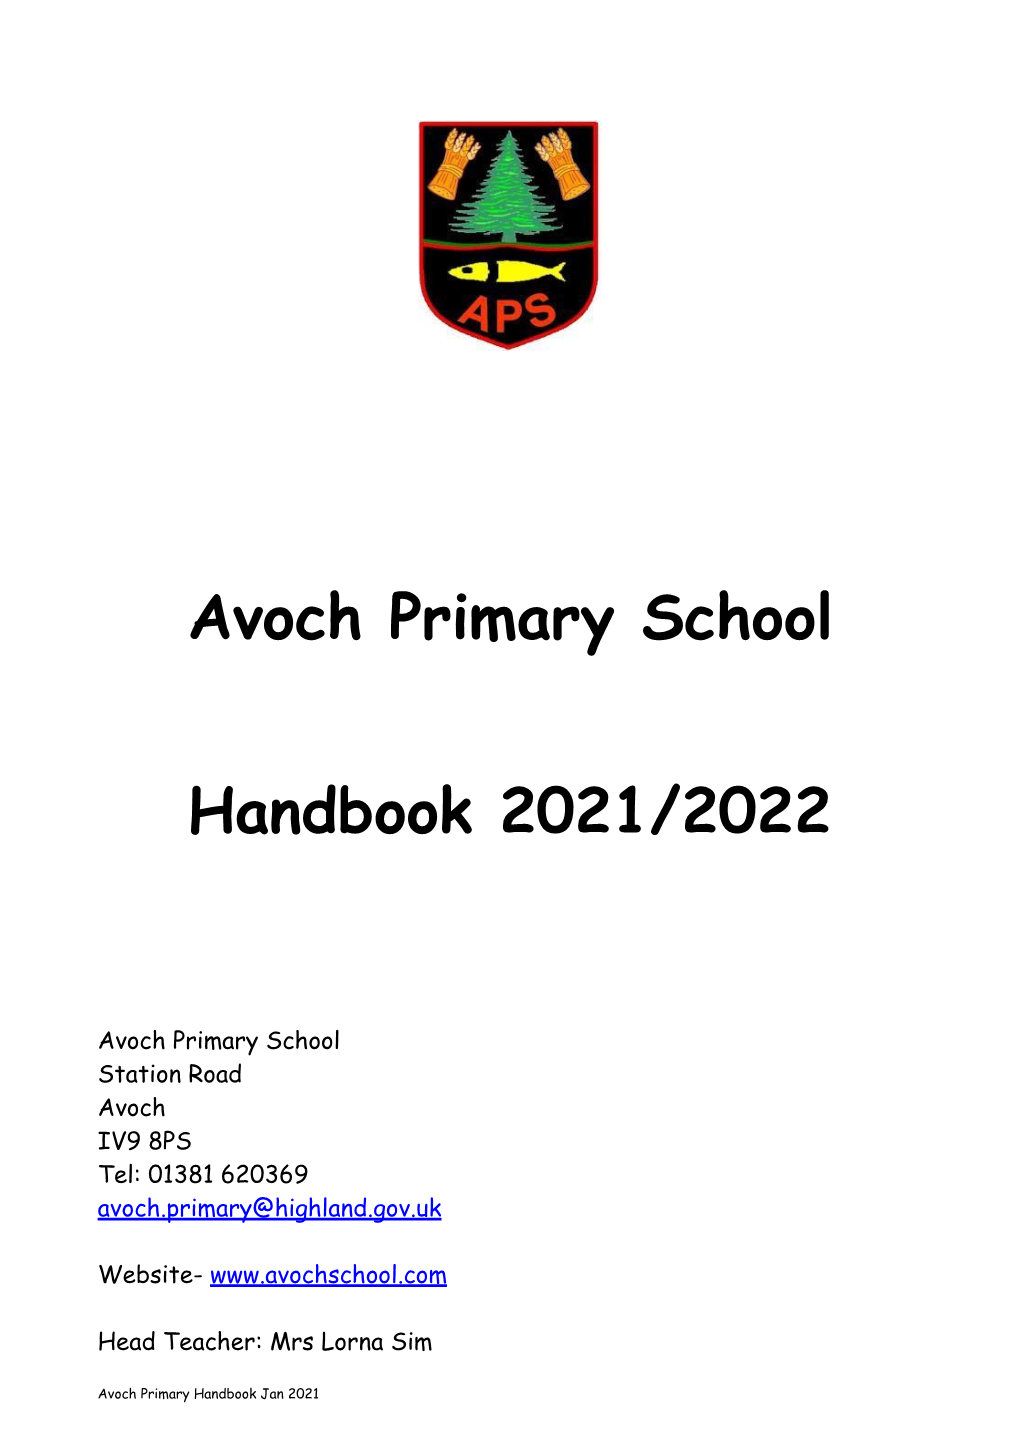 Avoch Primary School Handbook 2021/2022